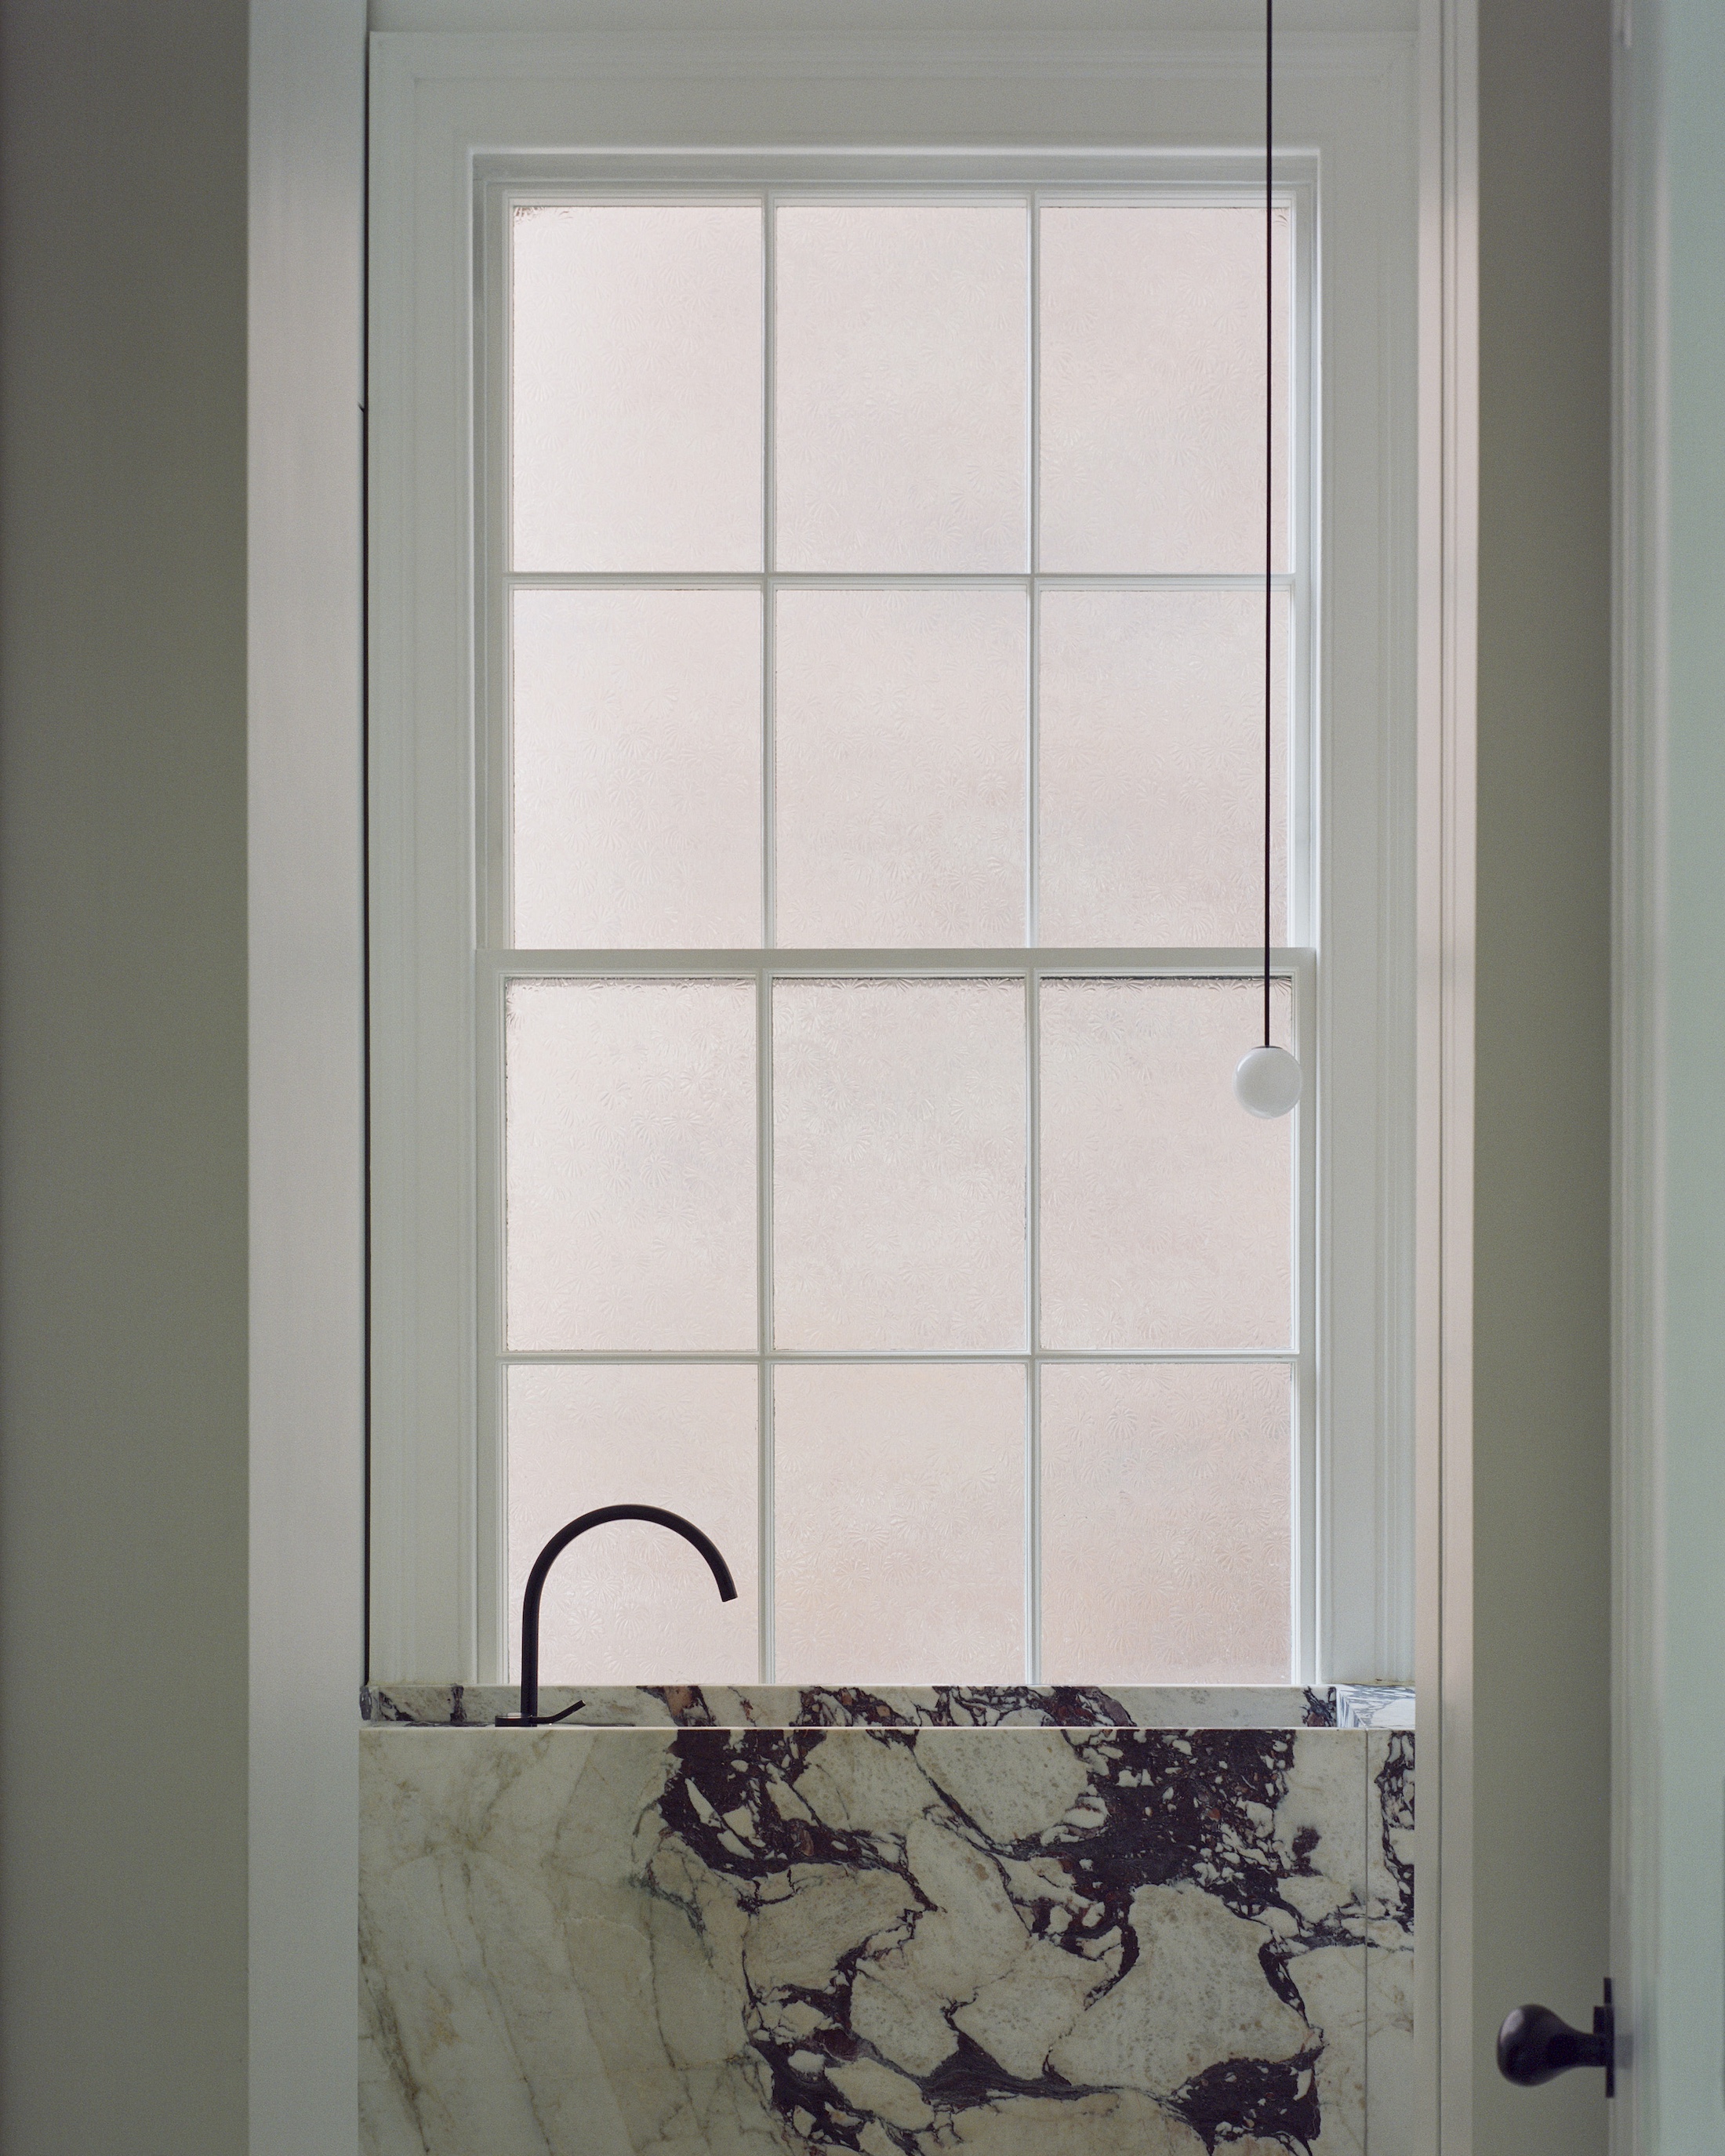 a window side marble basin. 31